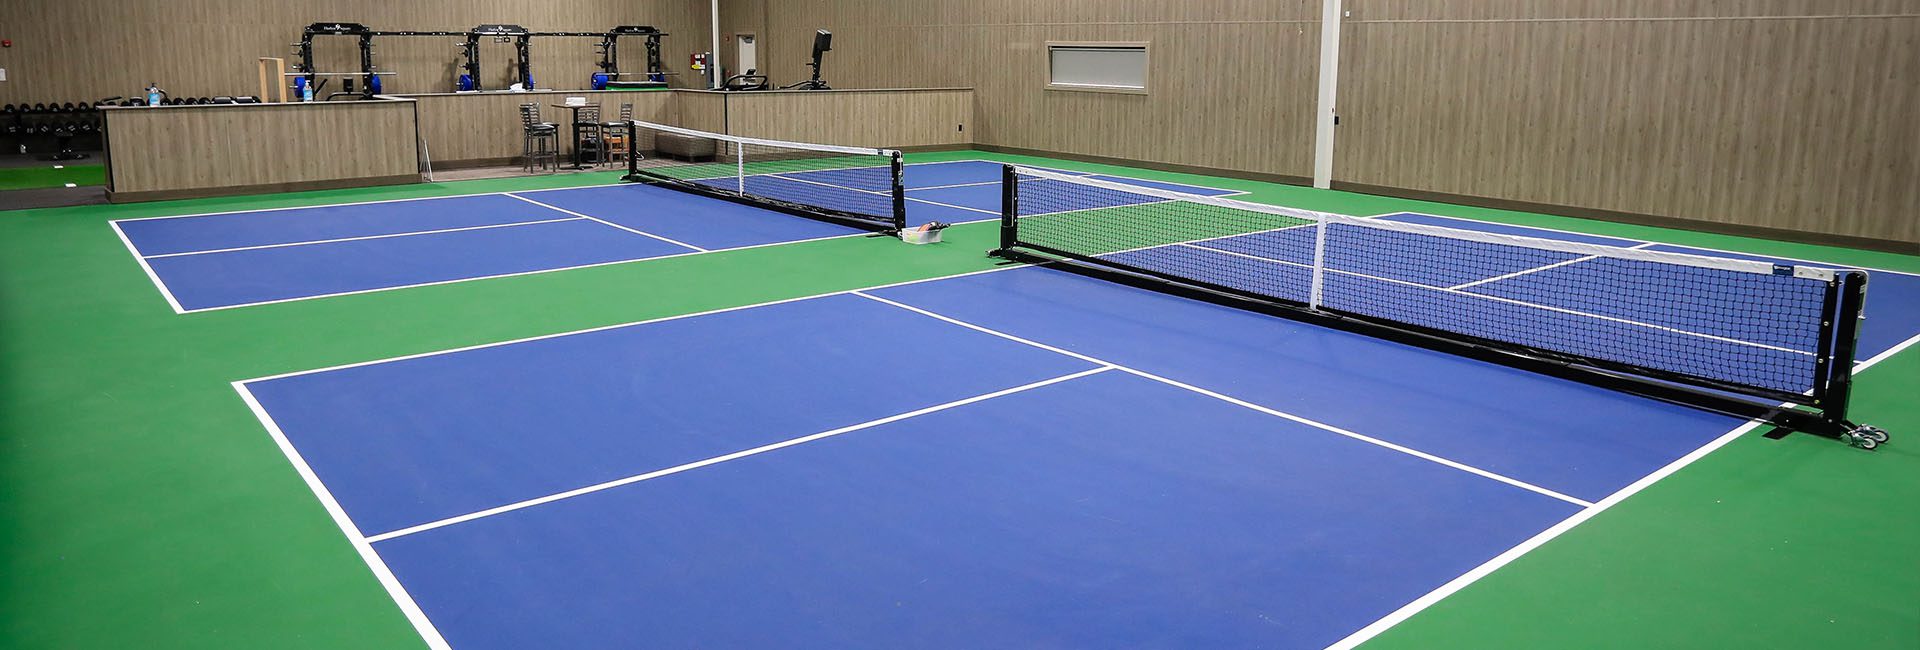 indoor pickleball courts